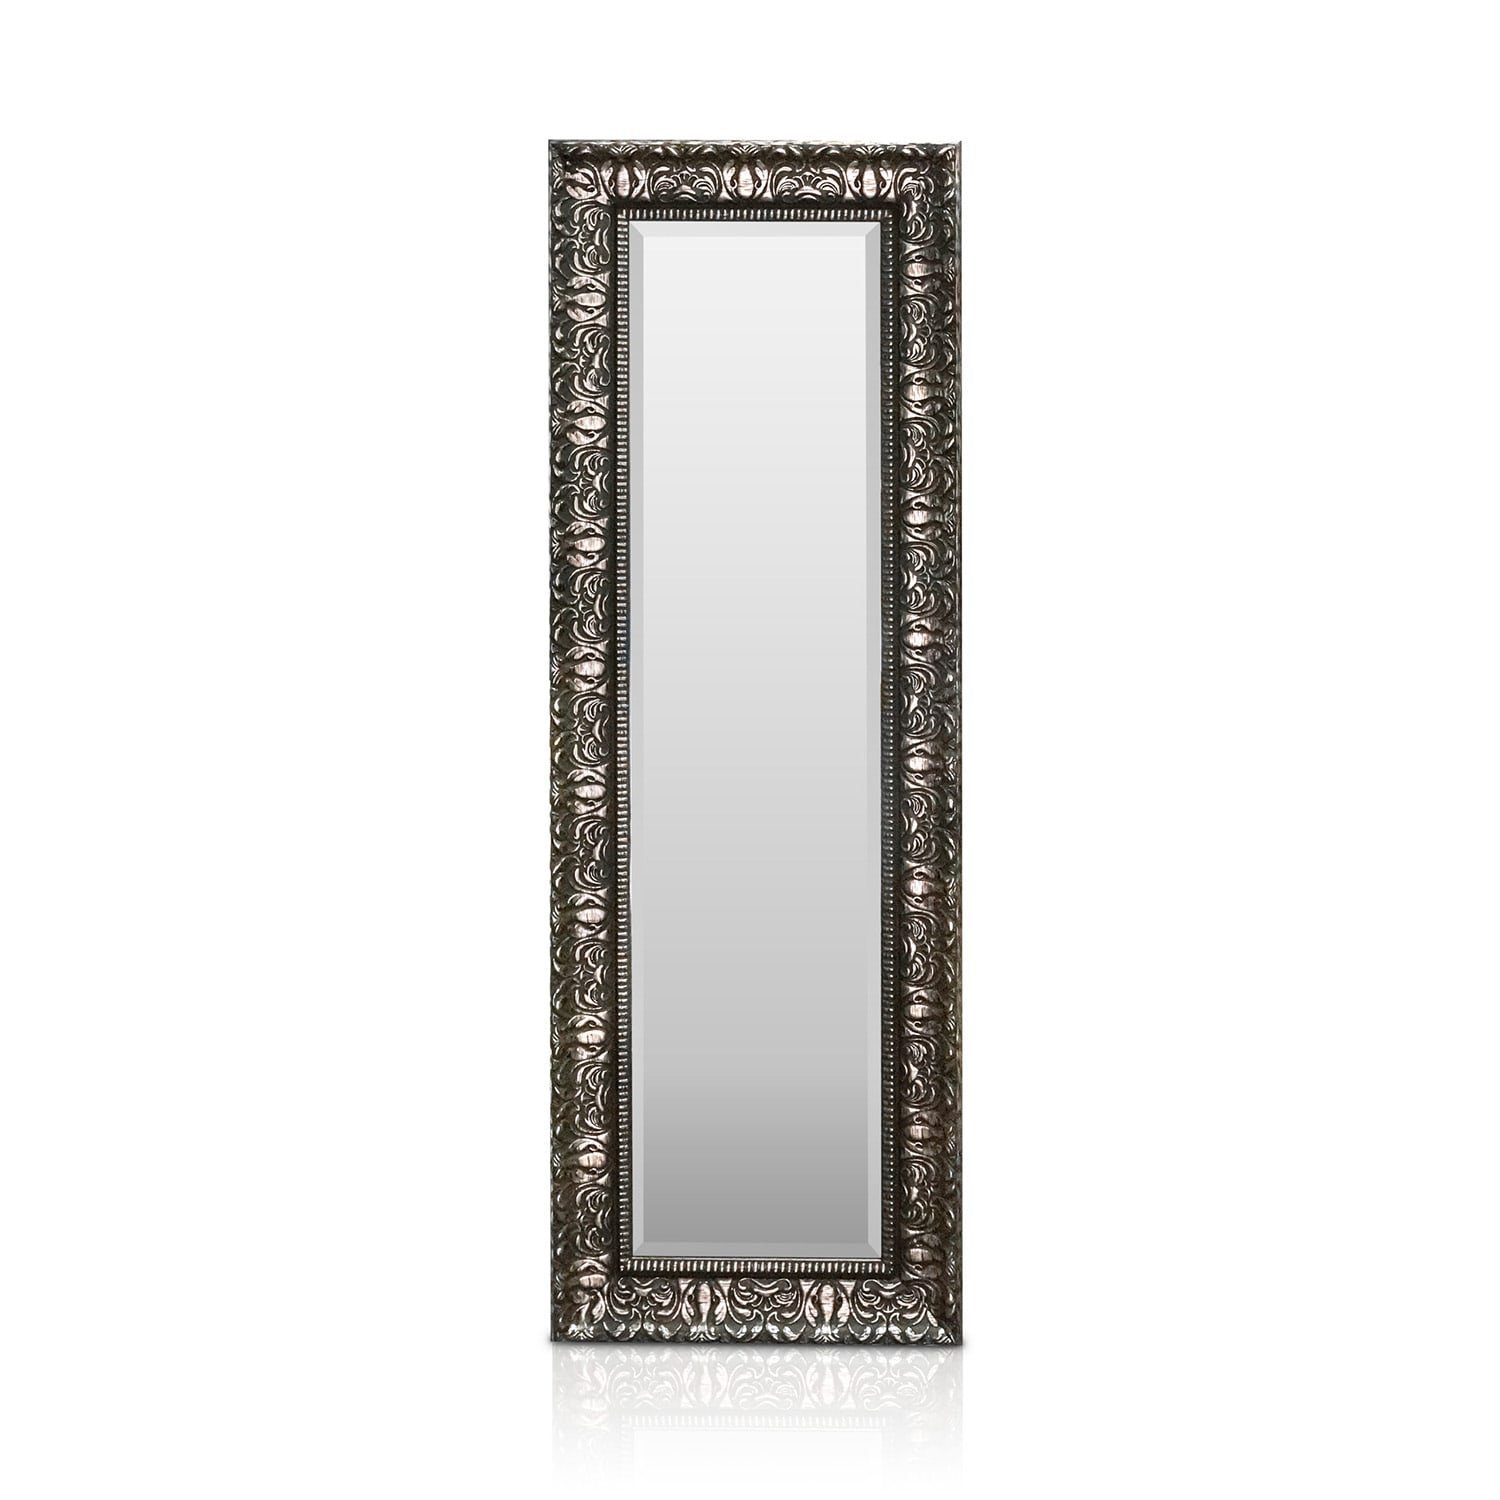 Casa Chic Spiegel Chelsea Spiegel Holzrahmen 130 x 45 cm Silber | Silber